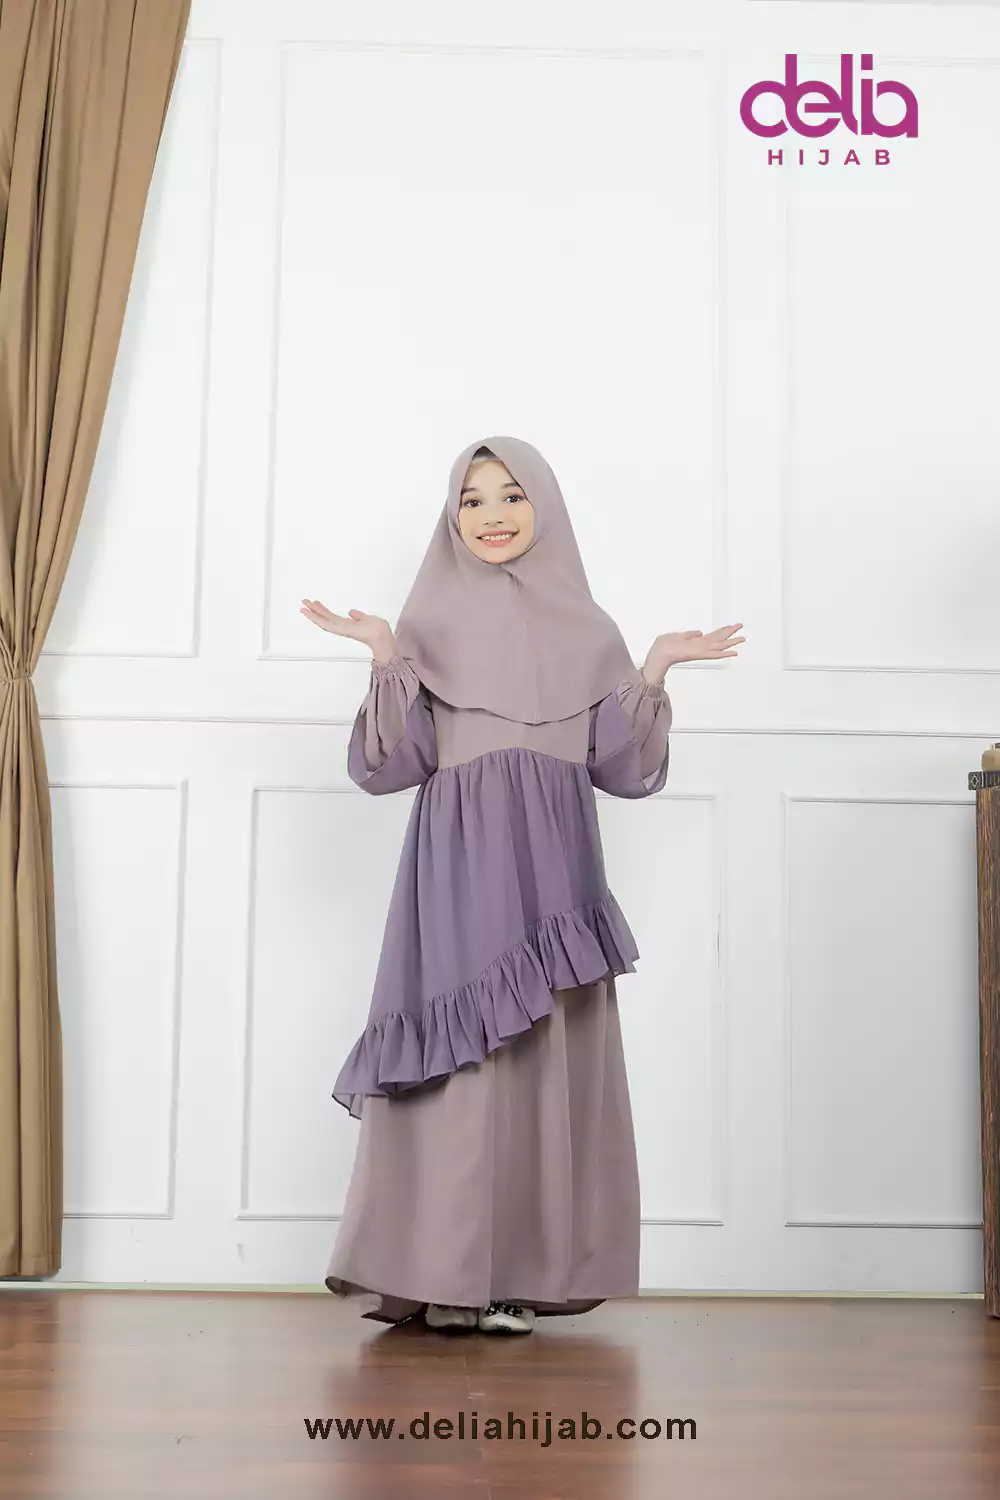 Baju Sarimbit Keluarga Muslim - Gamis Anak Sarimbit Emerald - Delia Hijab